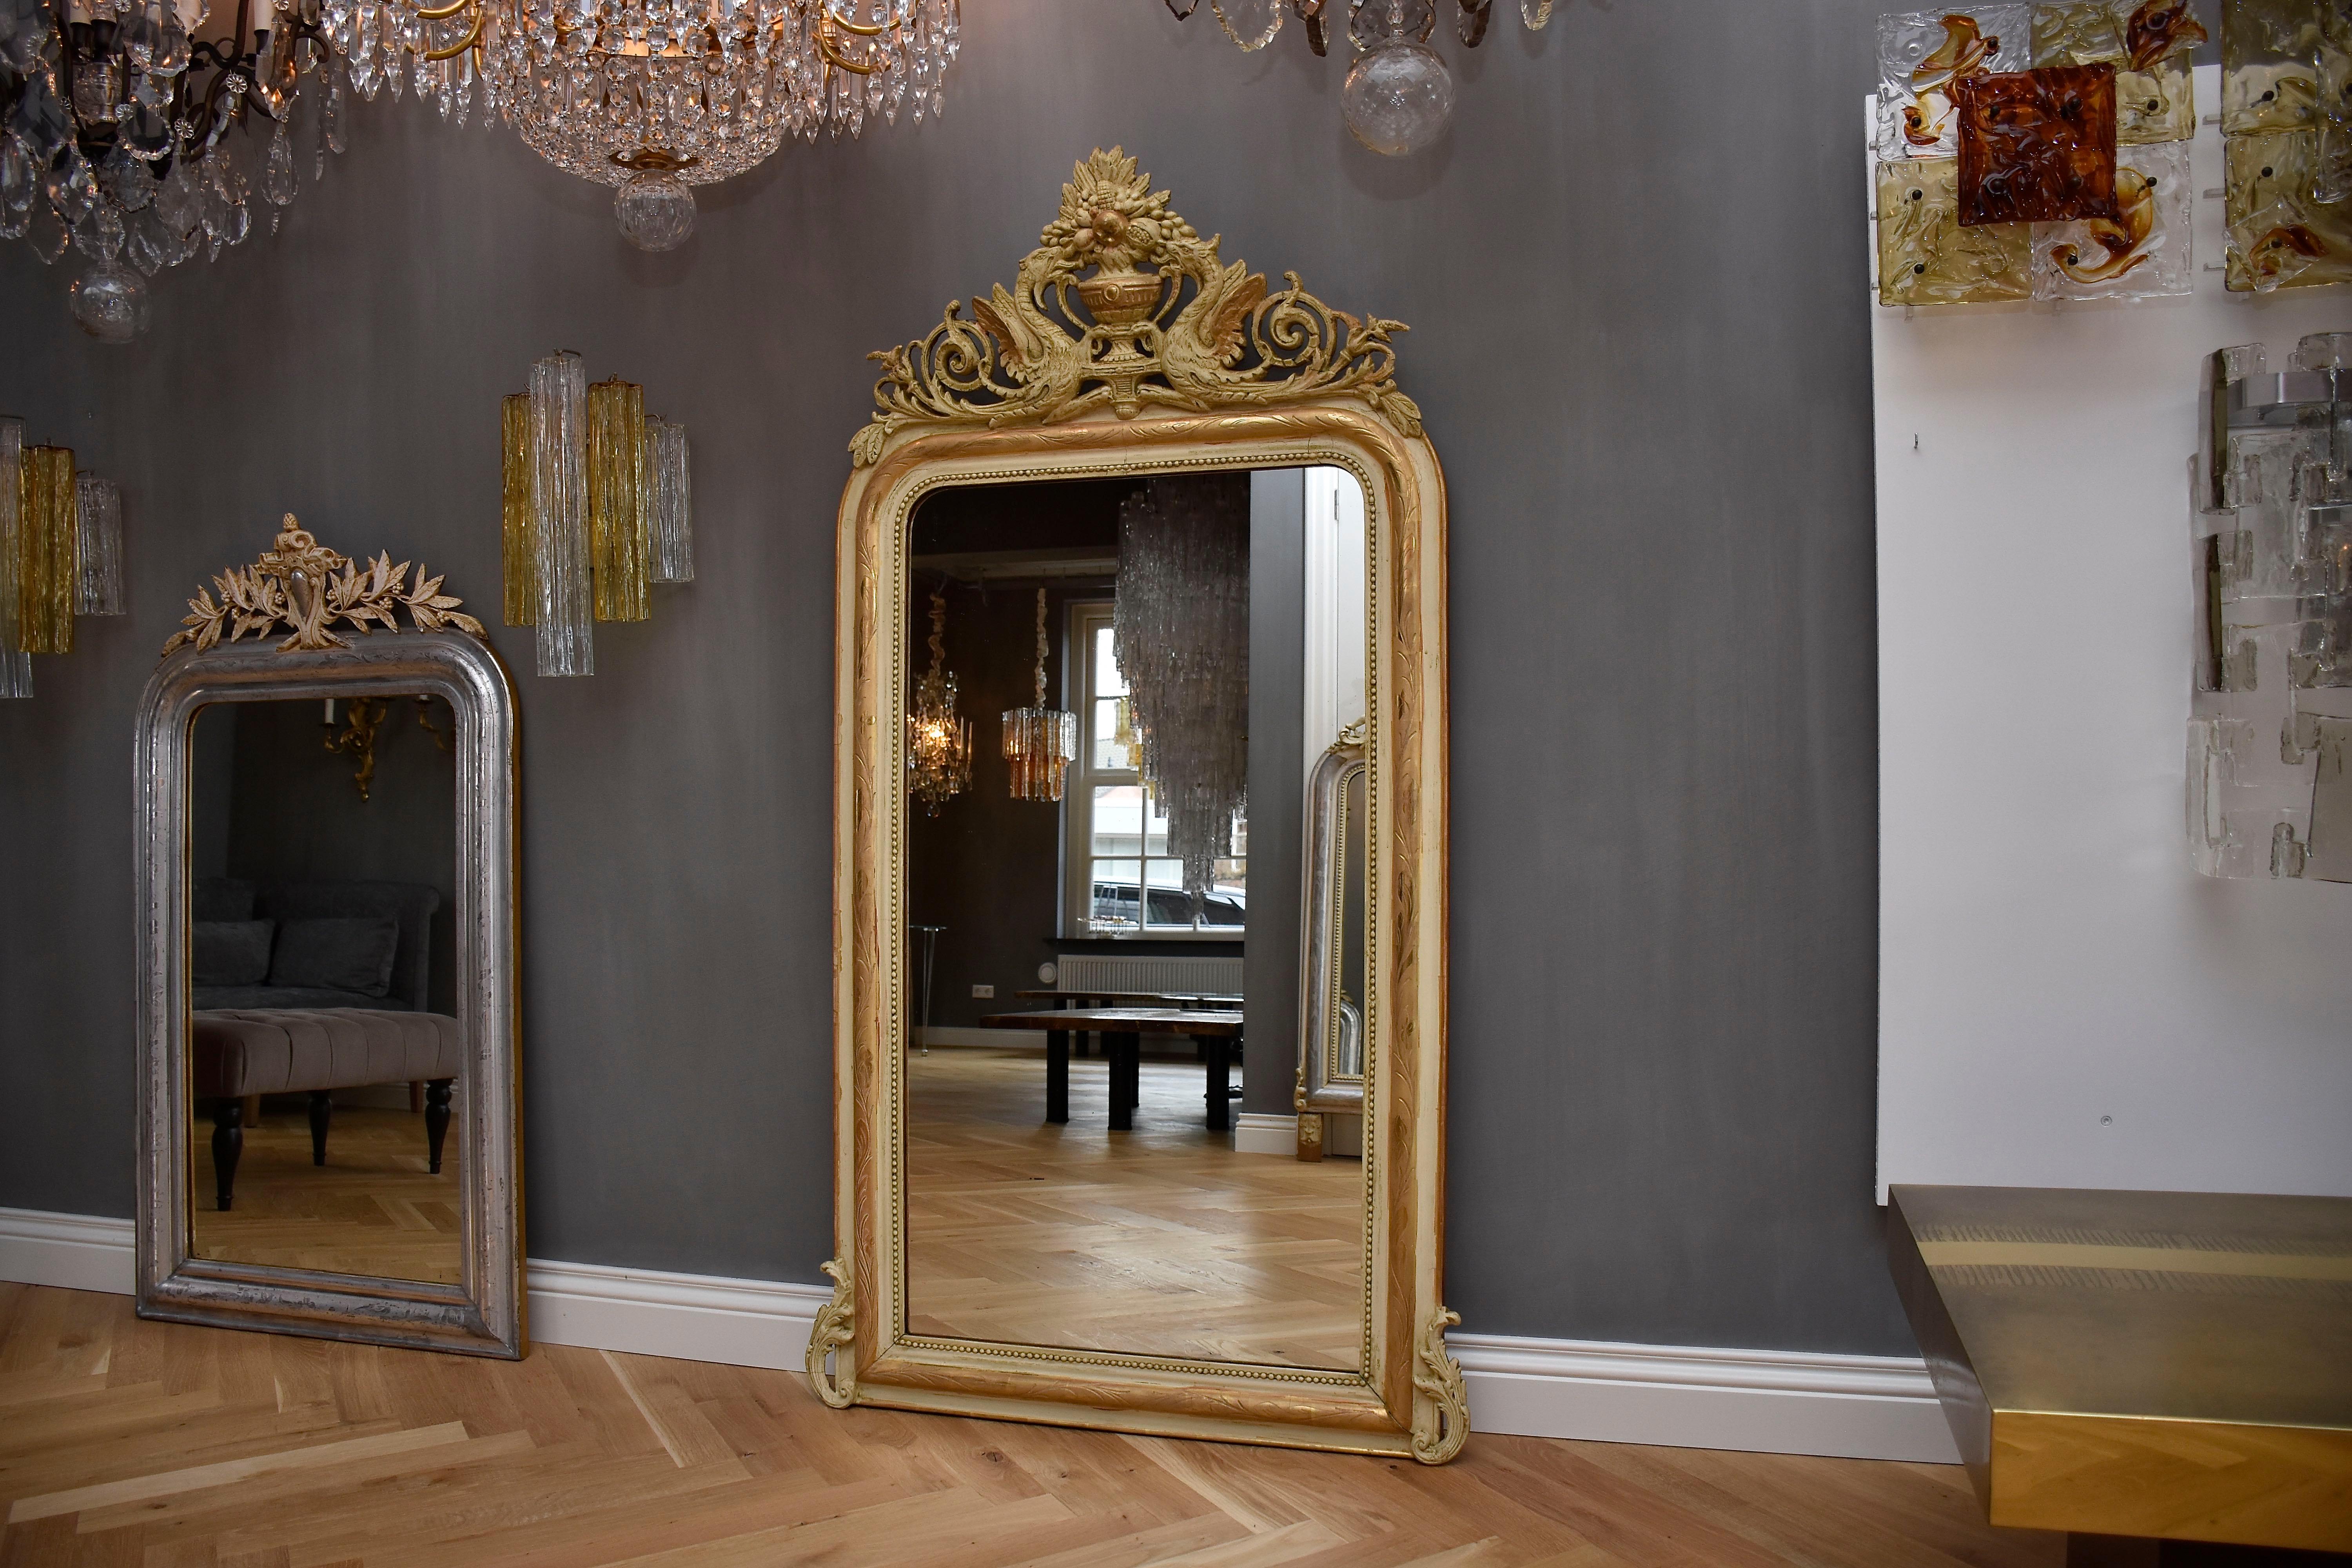 Un élégant miroir français ancien Louis Philippe avec une crête impressionnante.
L'écusson ajouré représente deux dragons prenant des fruits dans une corbeille. 
Le cadre a une couleur crème d'origine et une dorure à la feuille d'or. Il est gravé de